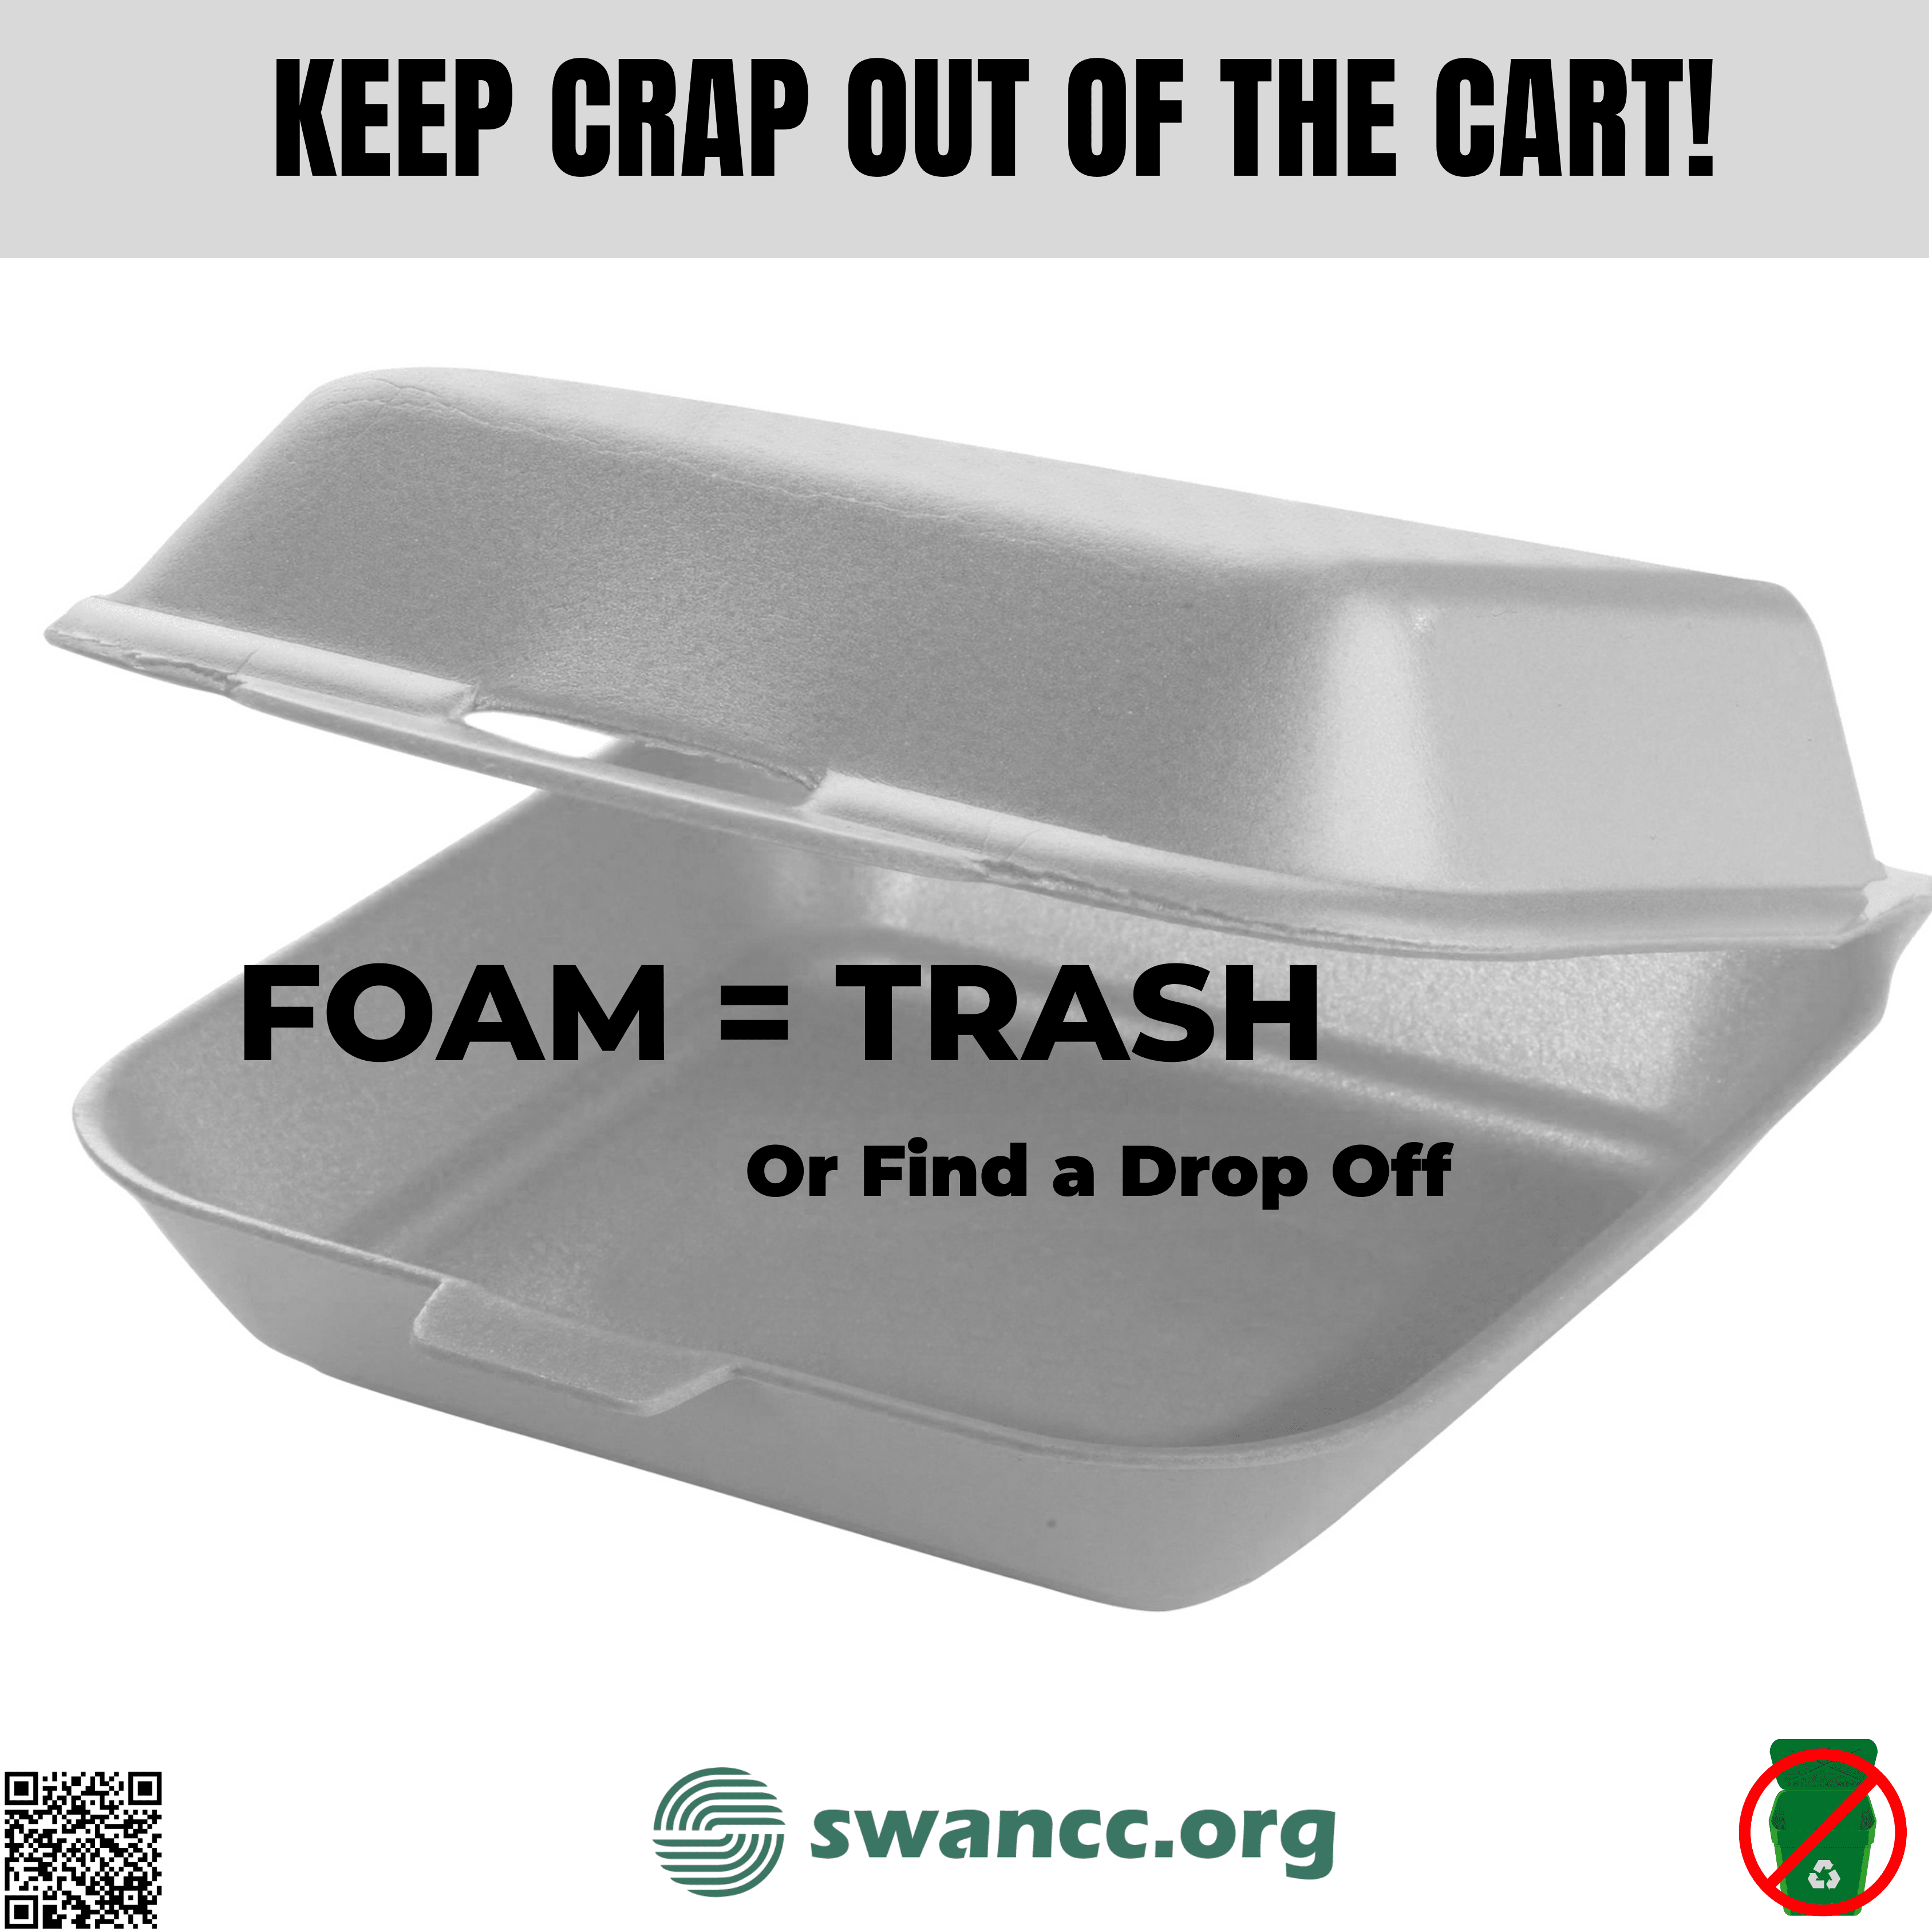 Styrofoam = Trash or Find A Drop Off